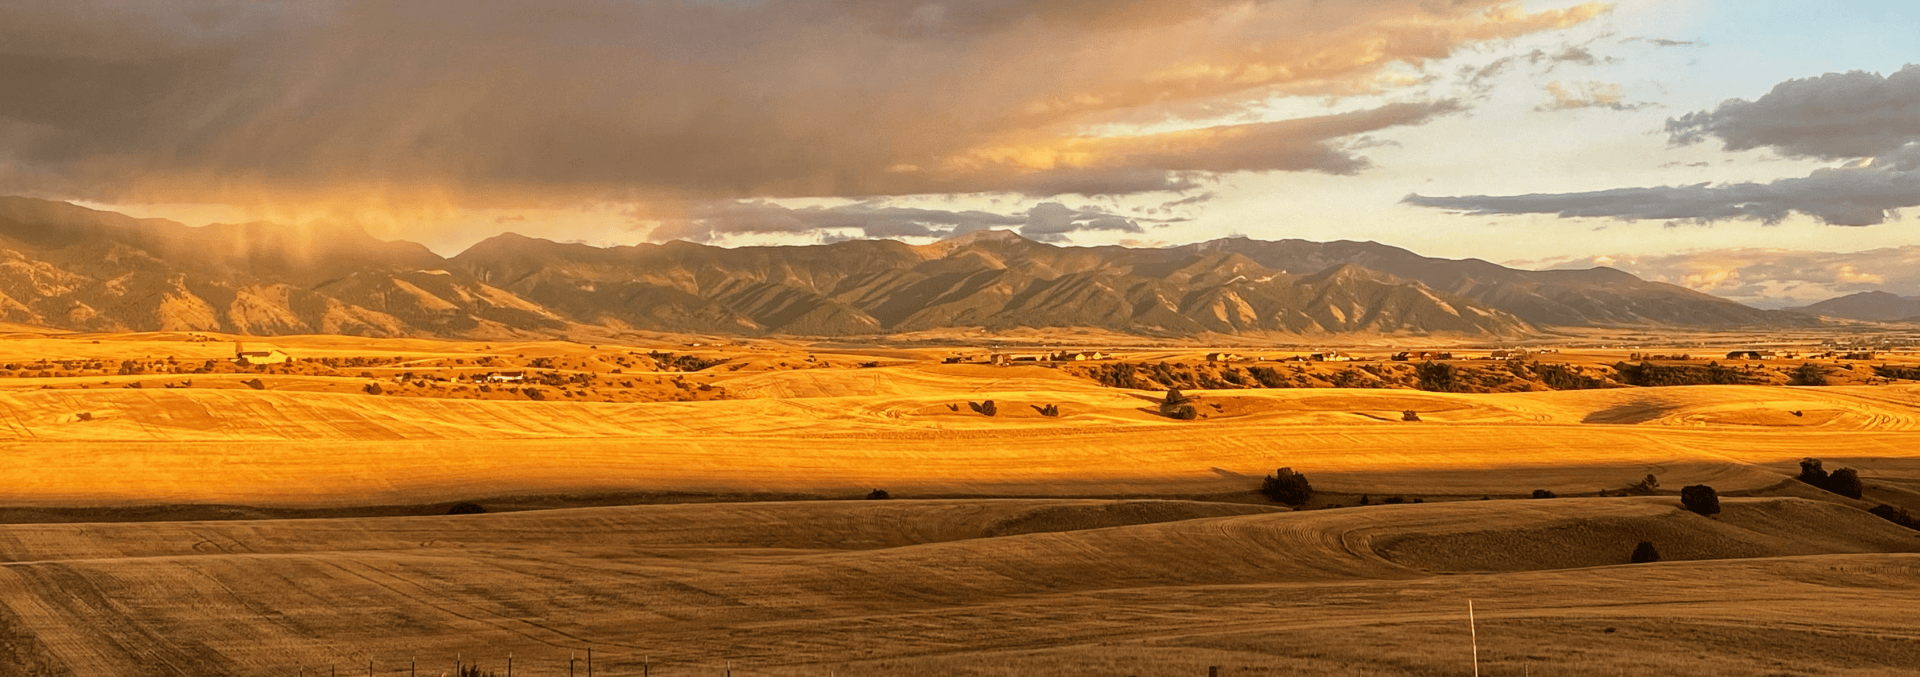 montana land for sale bridger views at rocking s7